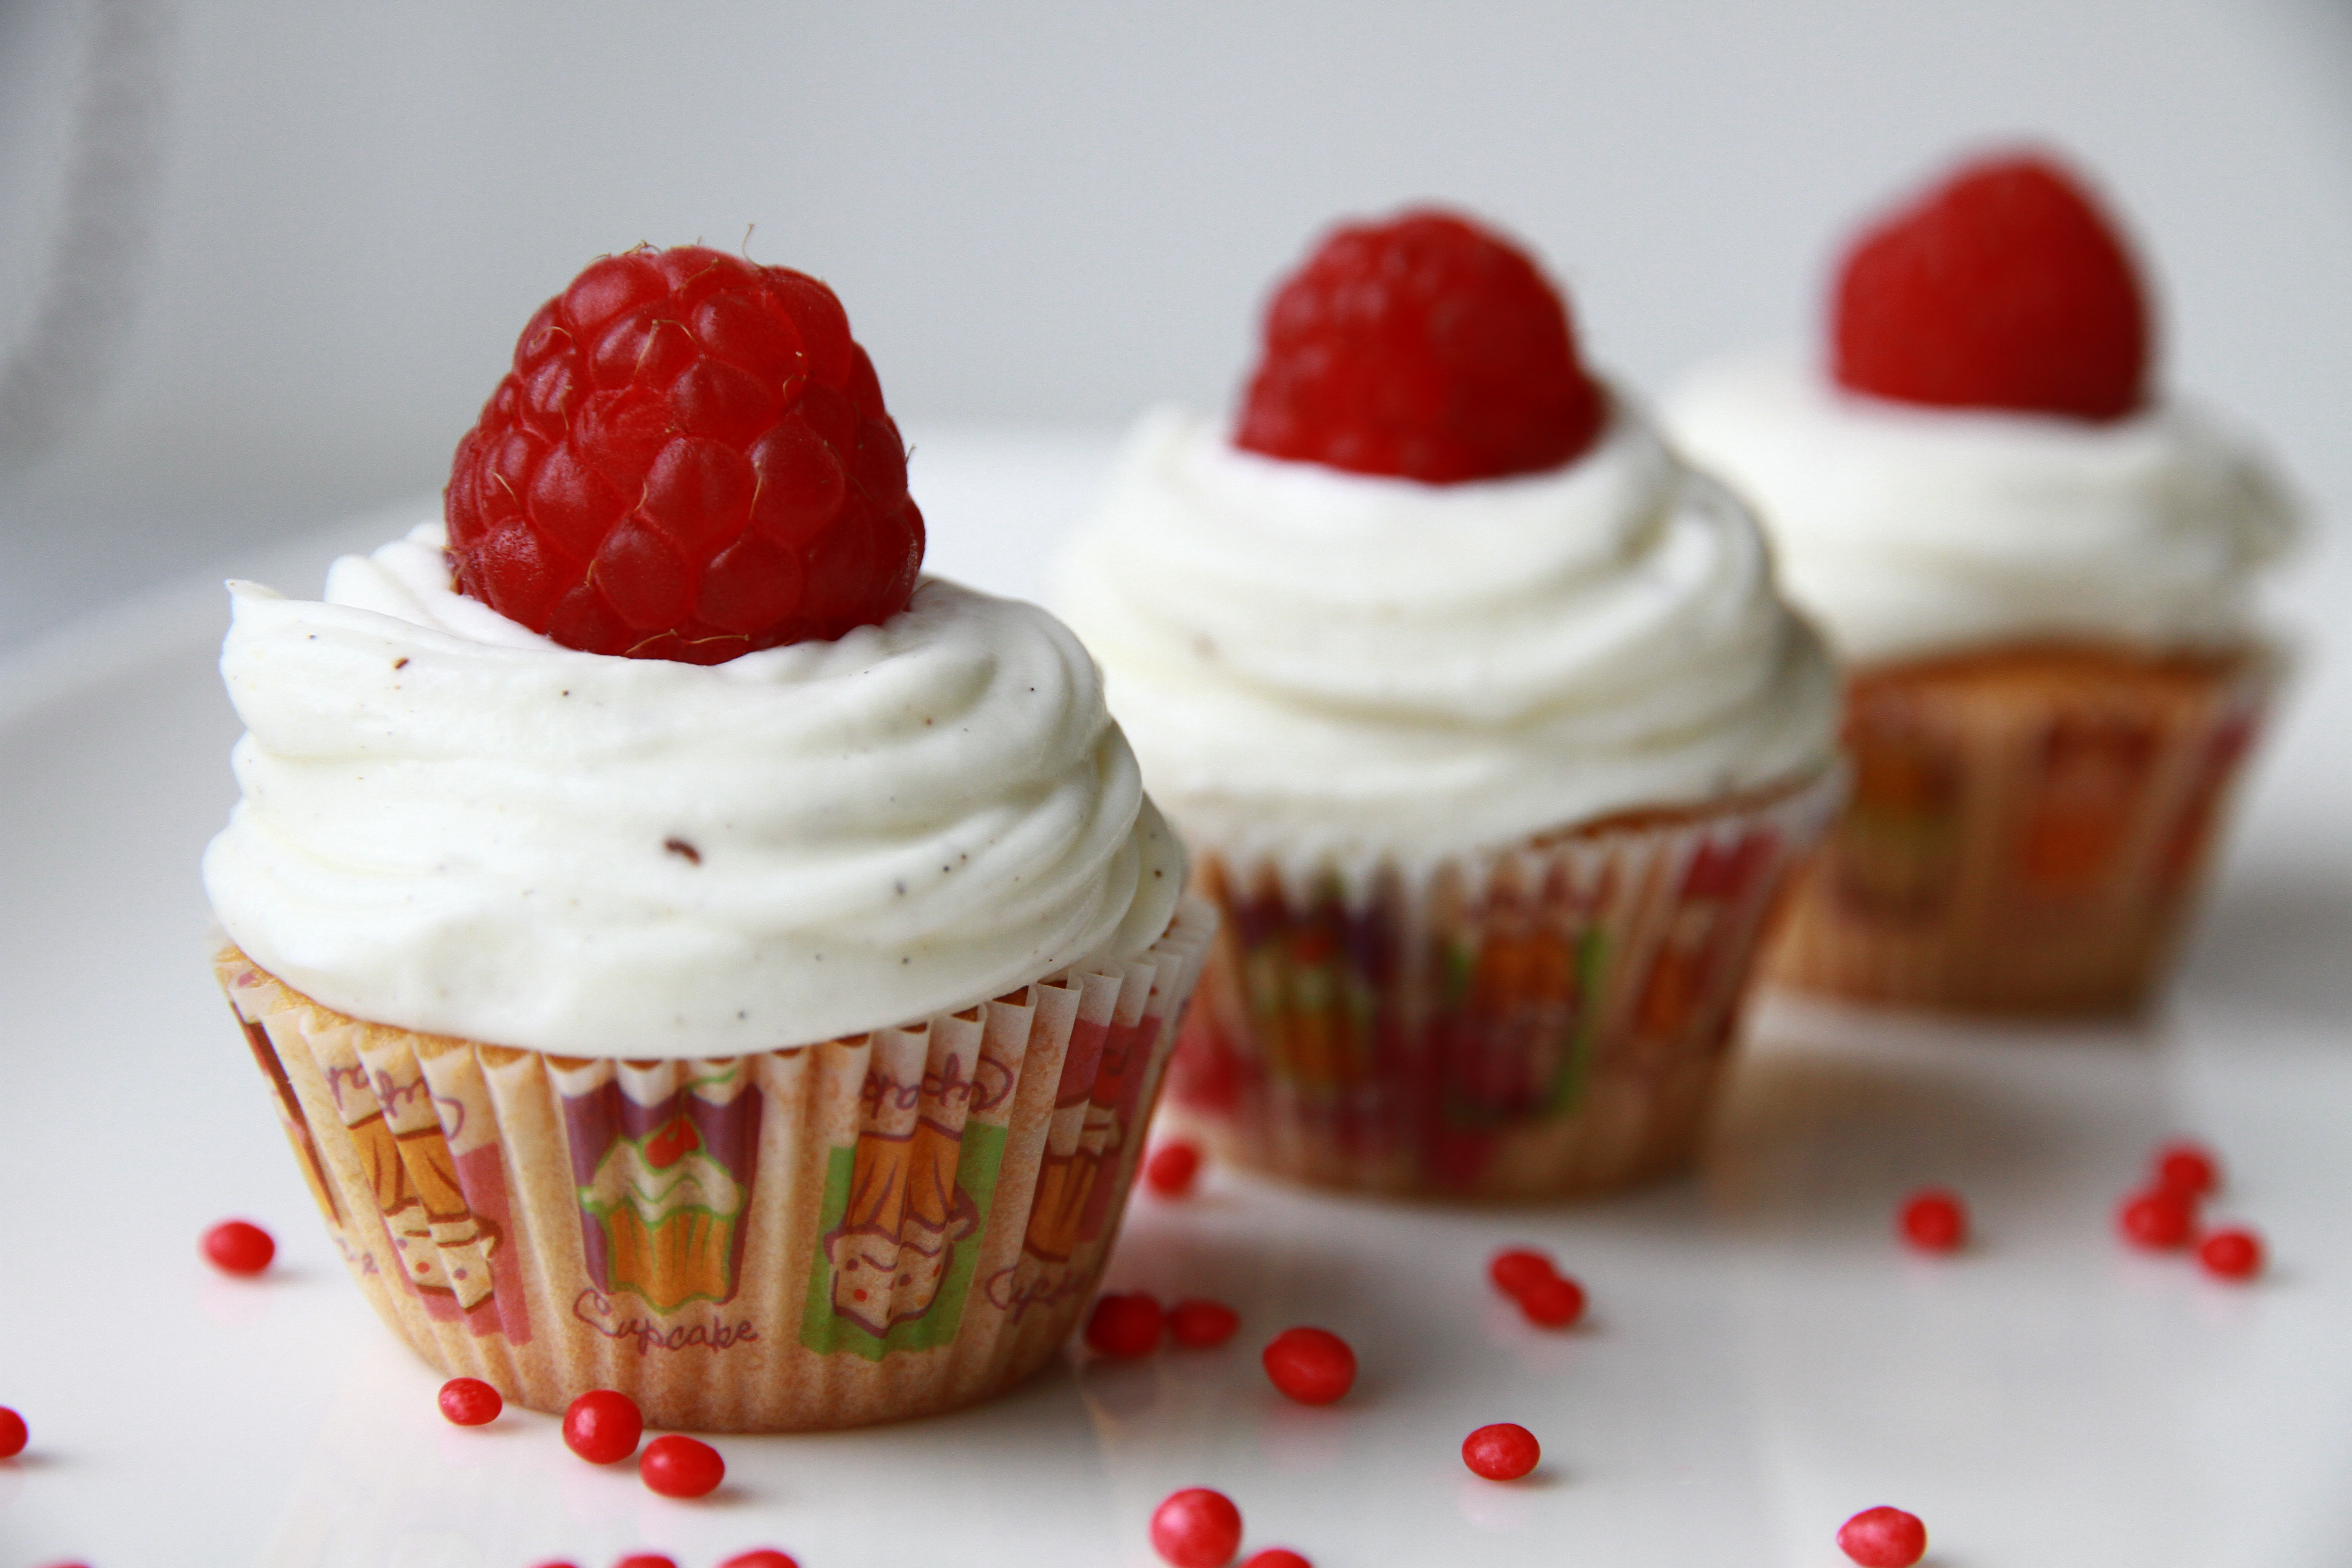 Raspberry cupcakes by Yana Kozlova